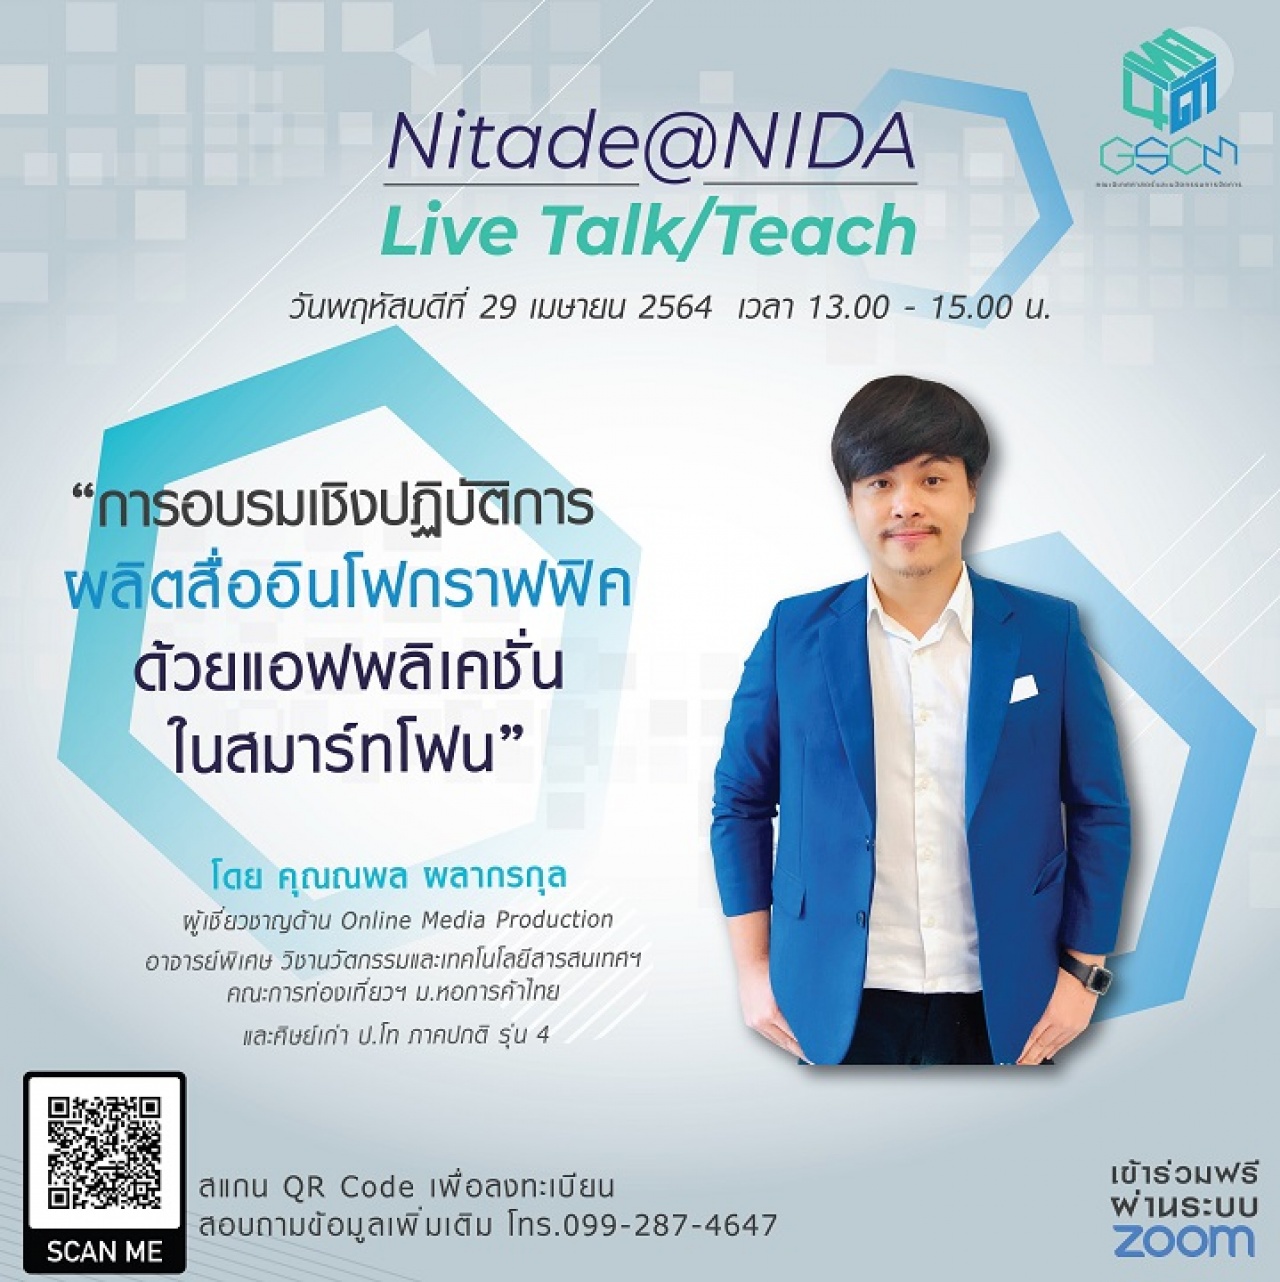 Nitade@NIDA Live Talk/Teach ใน "การอบรมเชิงปฏิบัติการผลิตสื่ออินโฟกราฟฟิคด้วยแอฟพลิเคชั่นในสมาร์ทโฟน